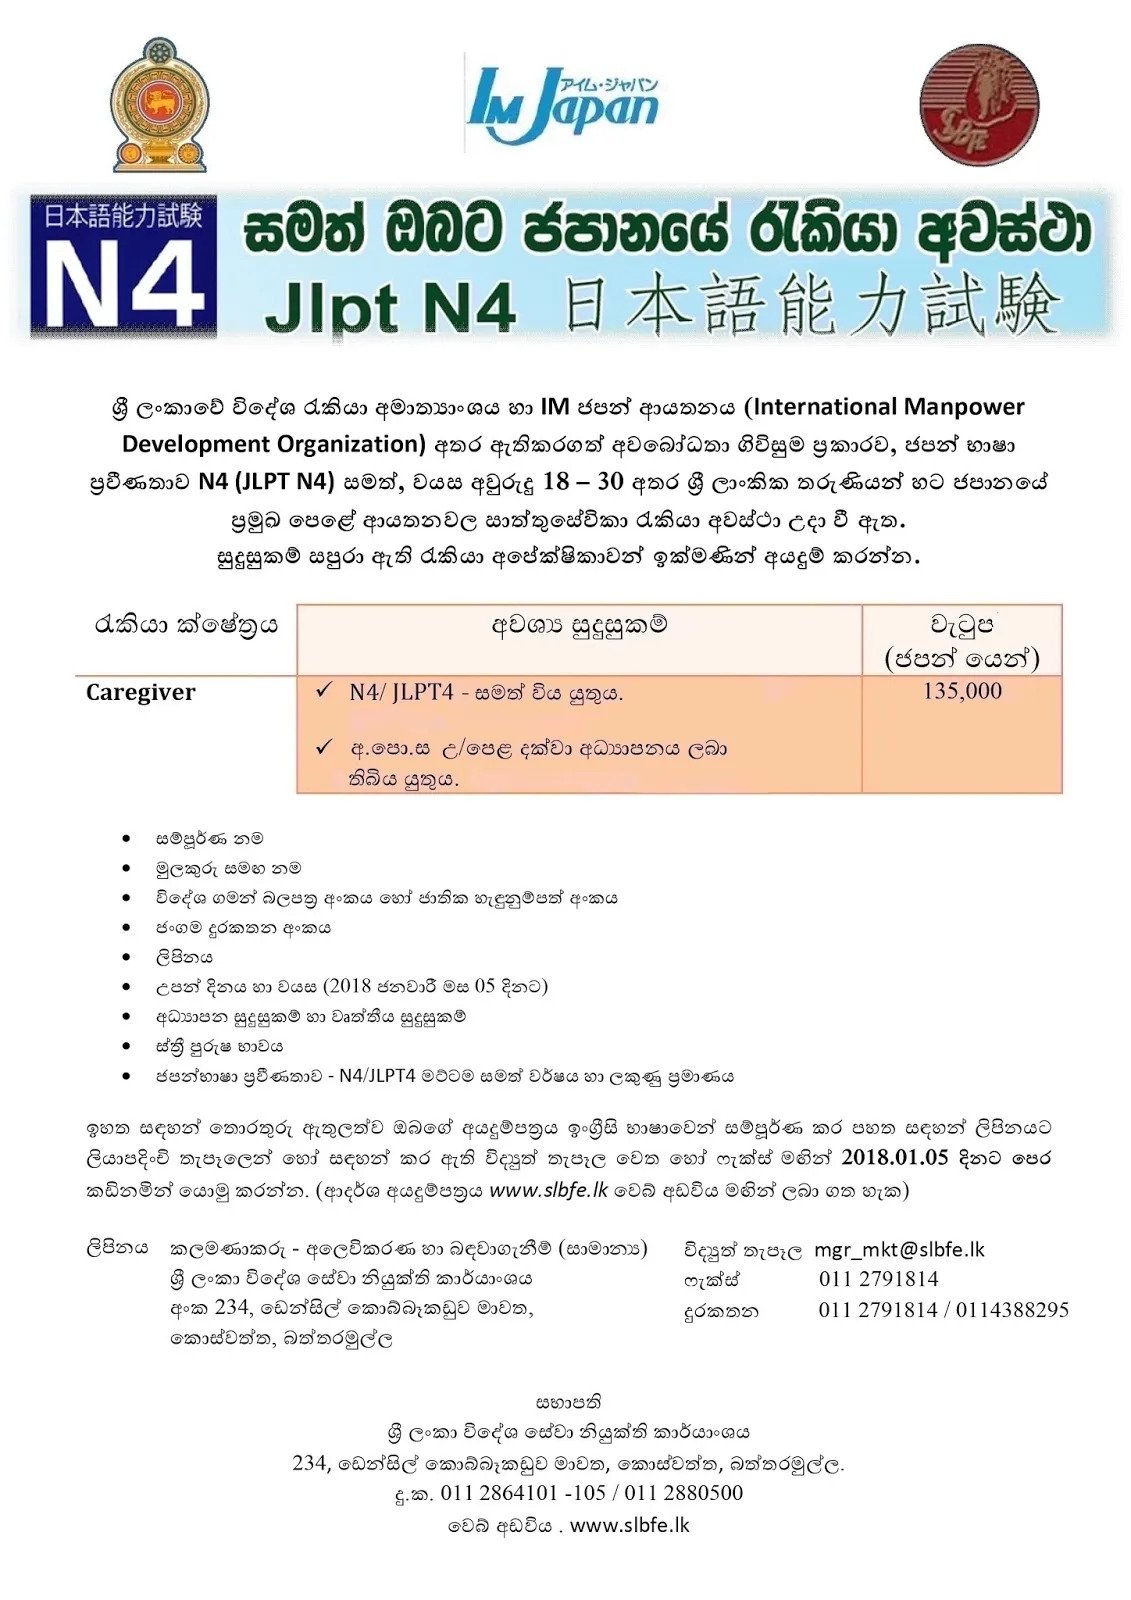 Job opportunities in Japan for Sri Lankans